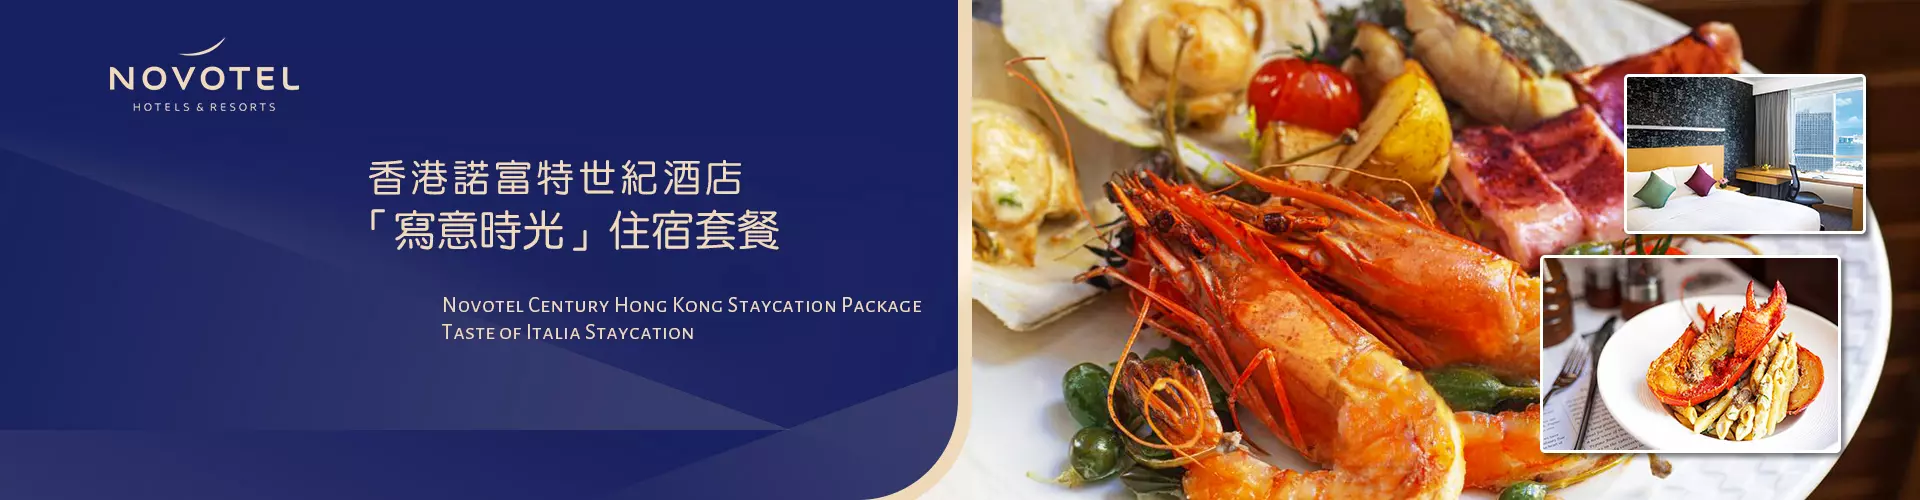 香港諾富特世紀酒店「寫意時光」住宿套餐